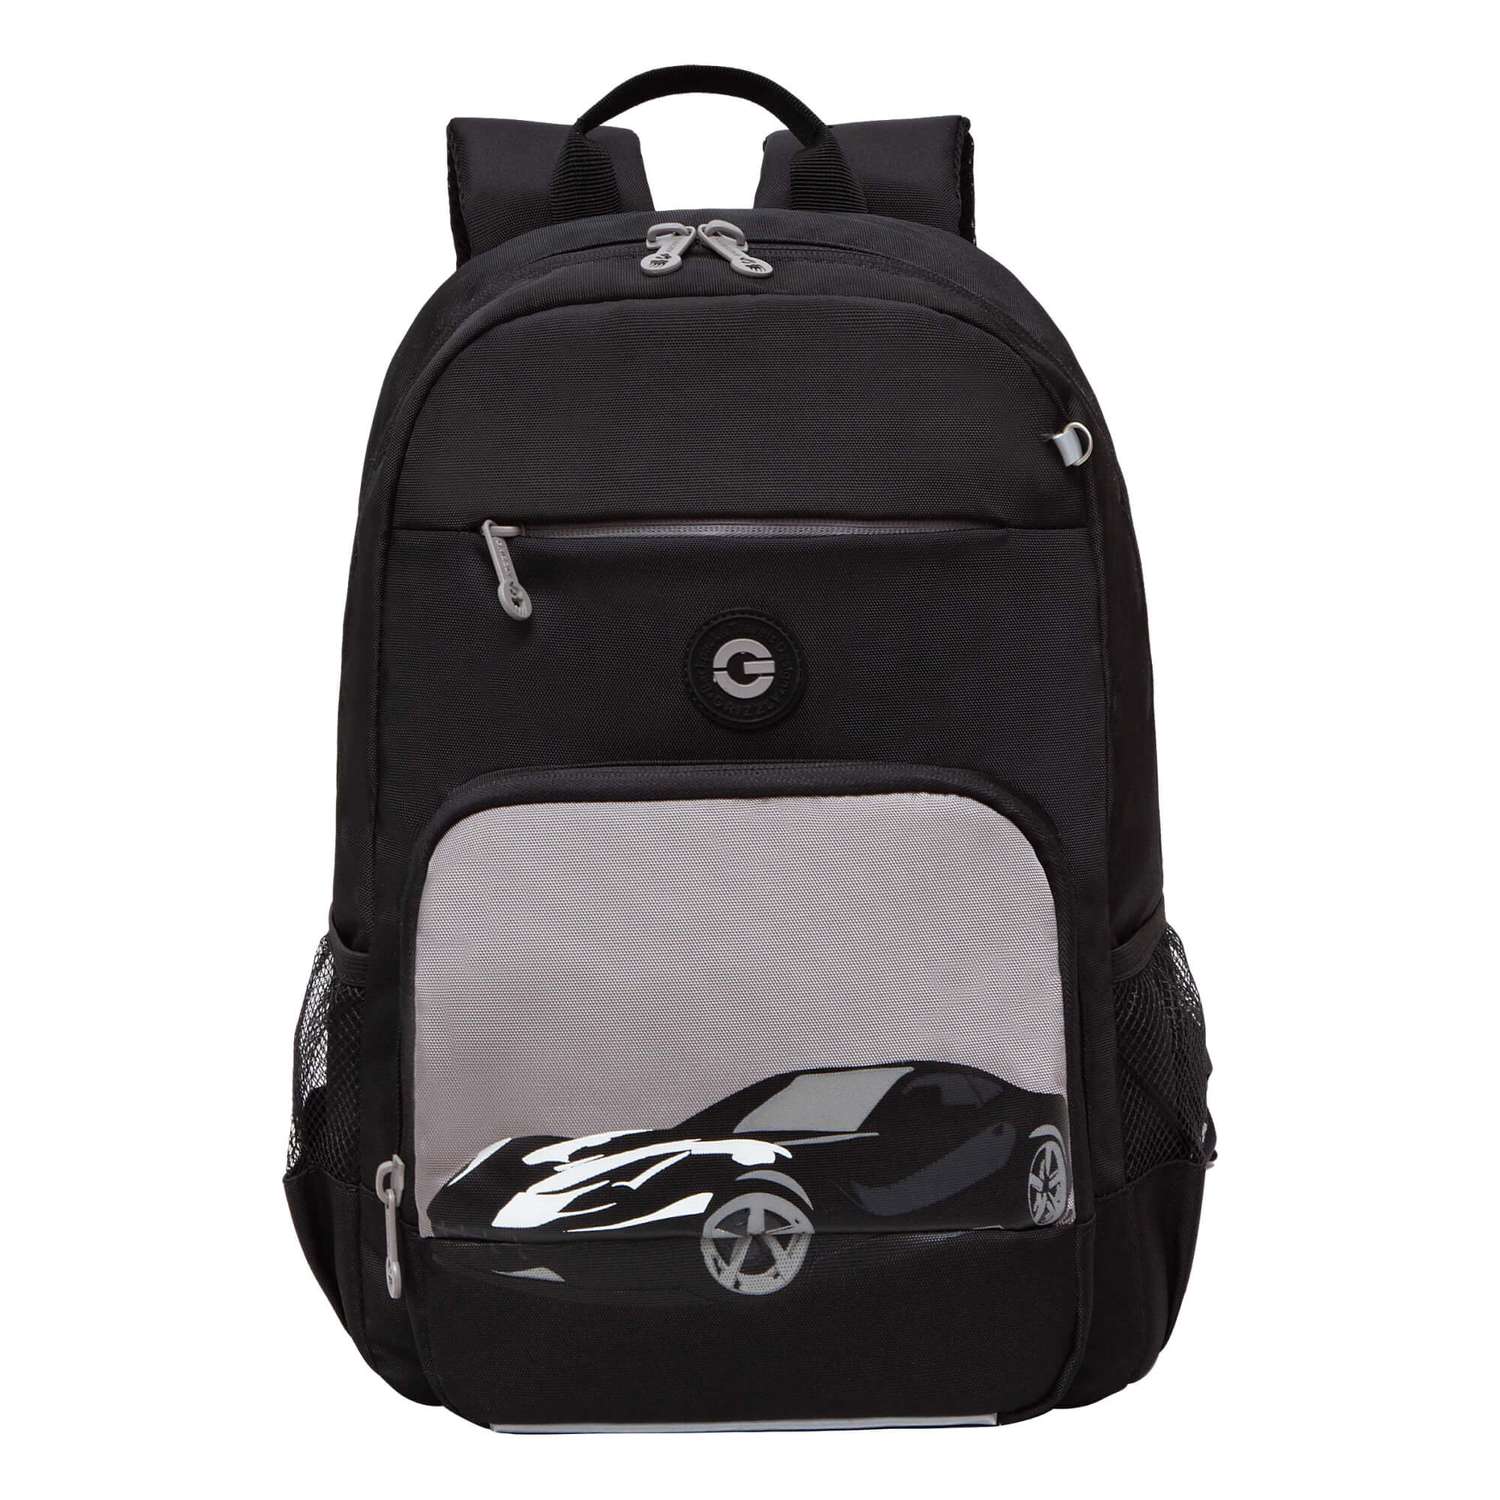 Рюкзак школьный Grizzly Черный-Серый RB-355-1/2 - фото 2